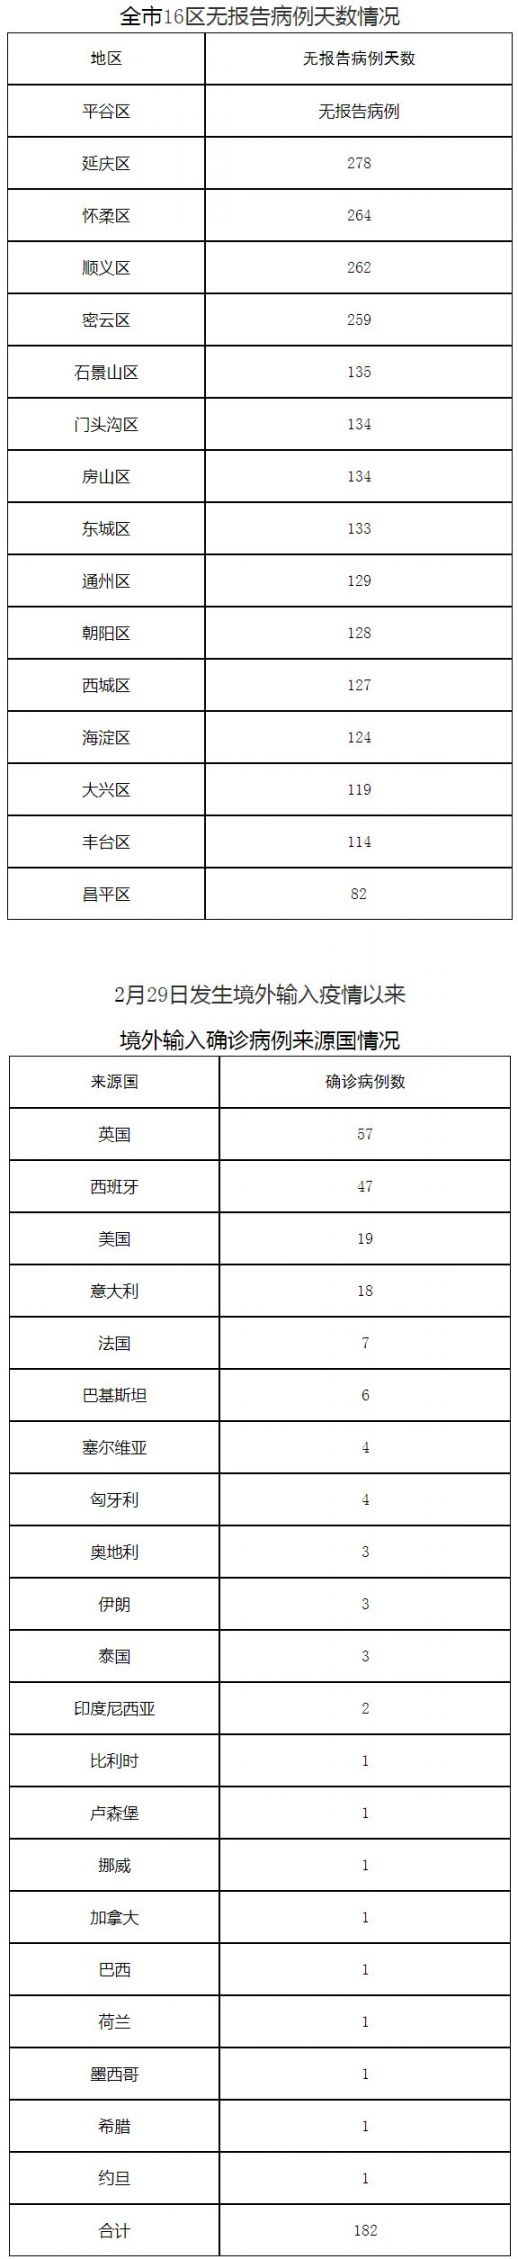 北京10月27日无新增报告新冠肺炎确诊病例